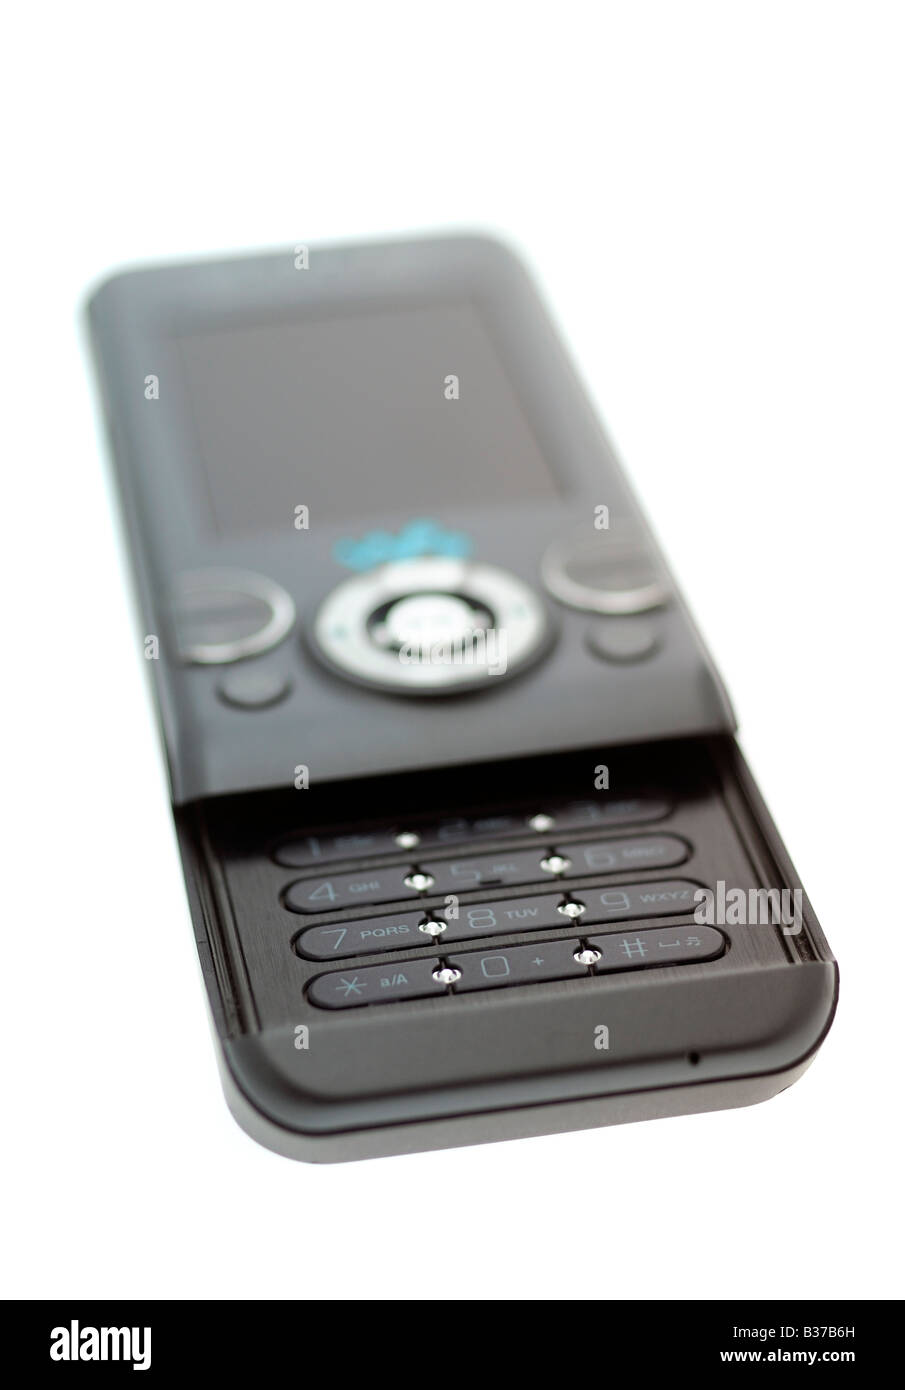 Sony Ericsson Mobile Phone Stock Photo